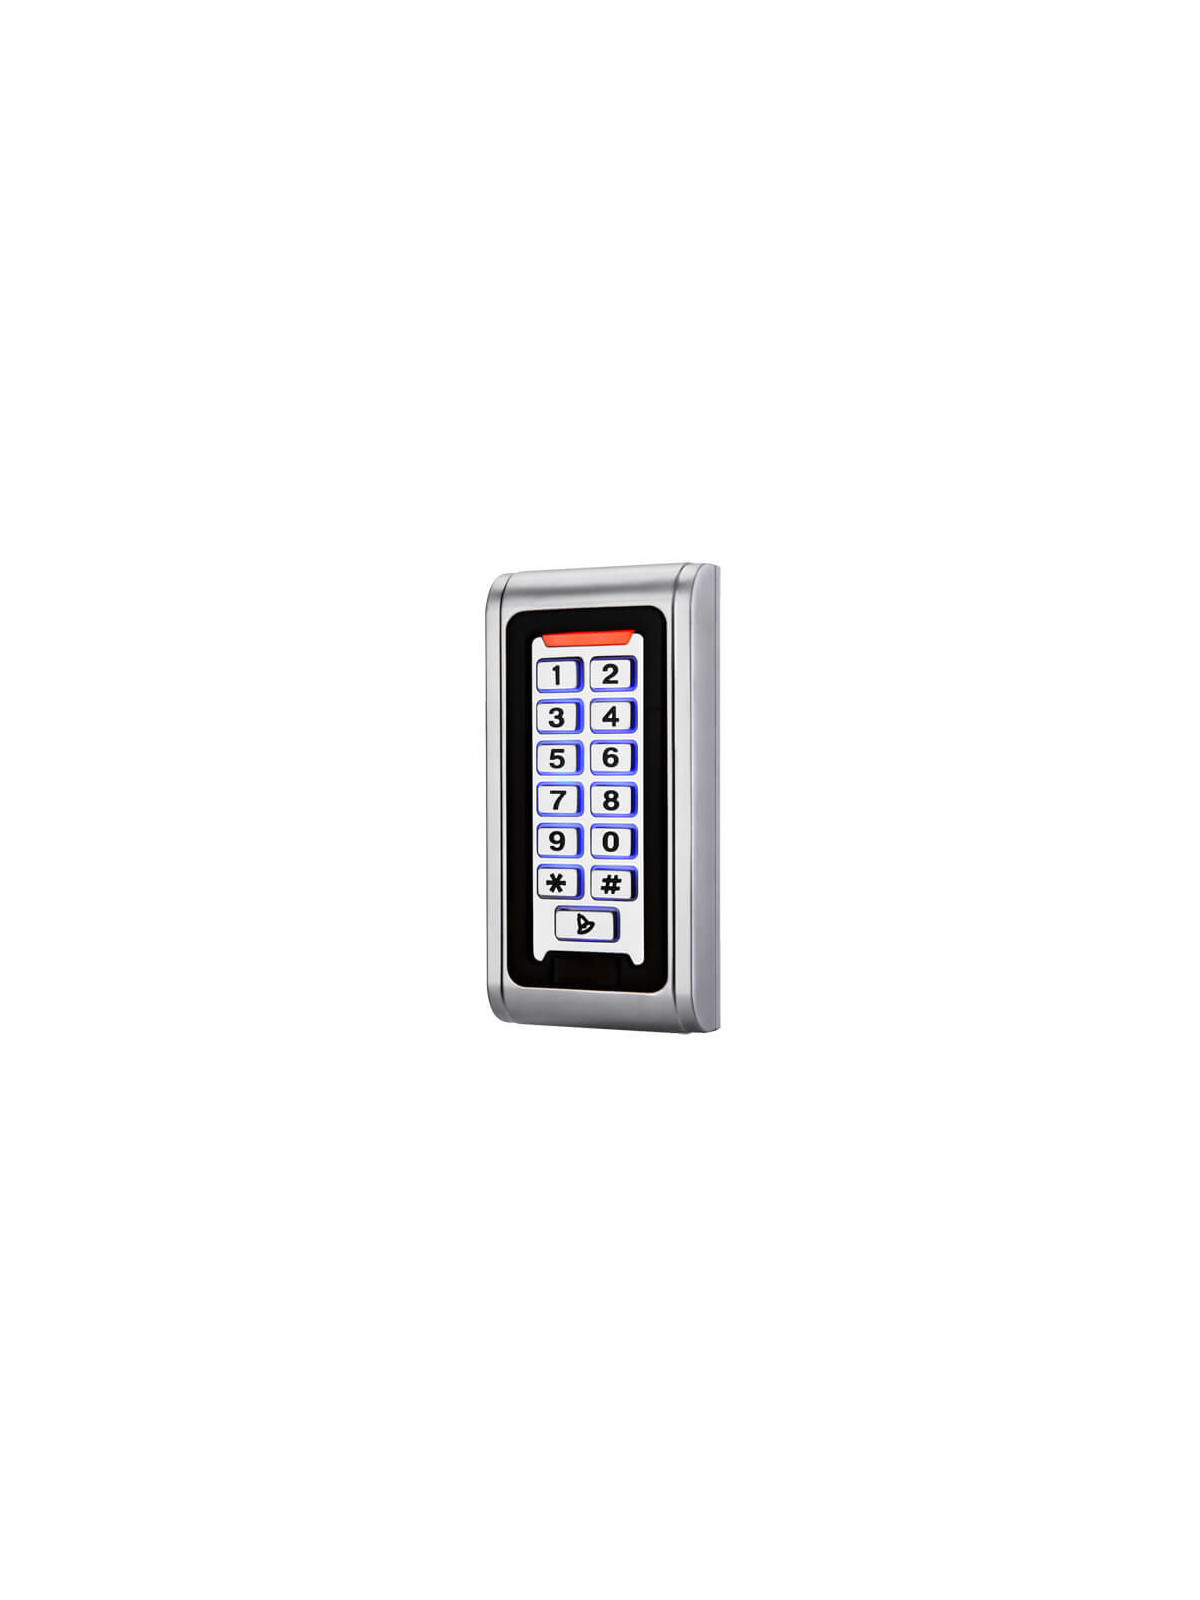 Control de accesos autónomo AC103 Teclado RFID Wiegand26 Relé Alarma Timbre IP68